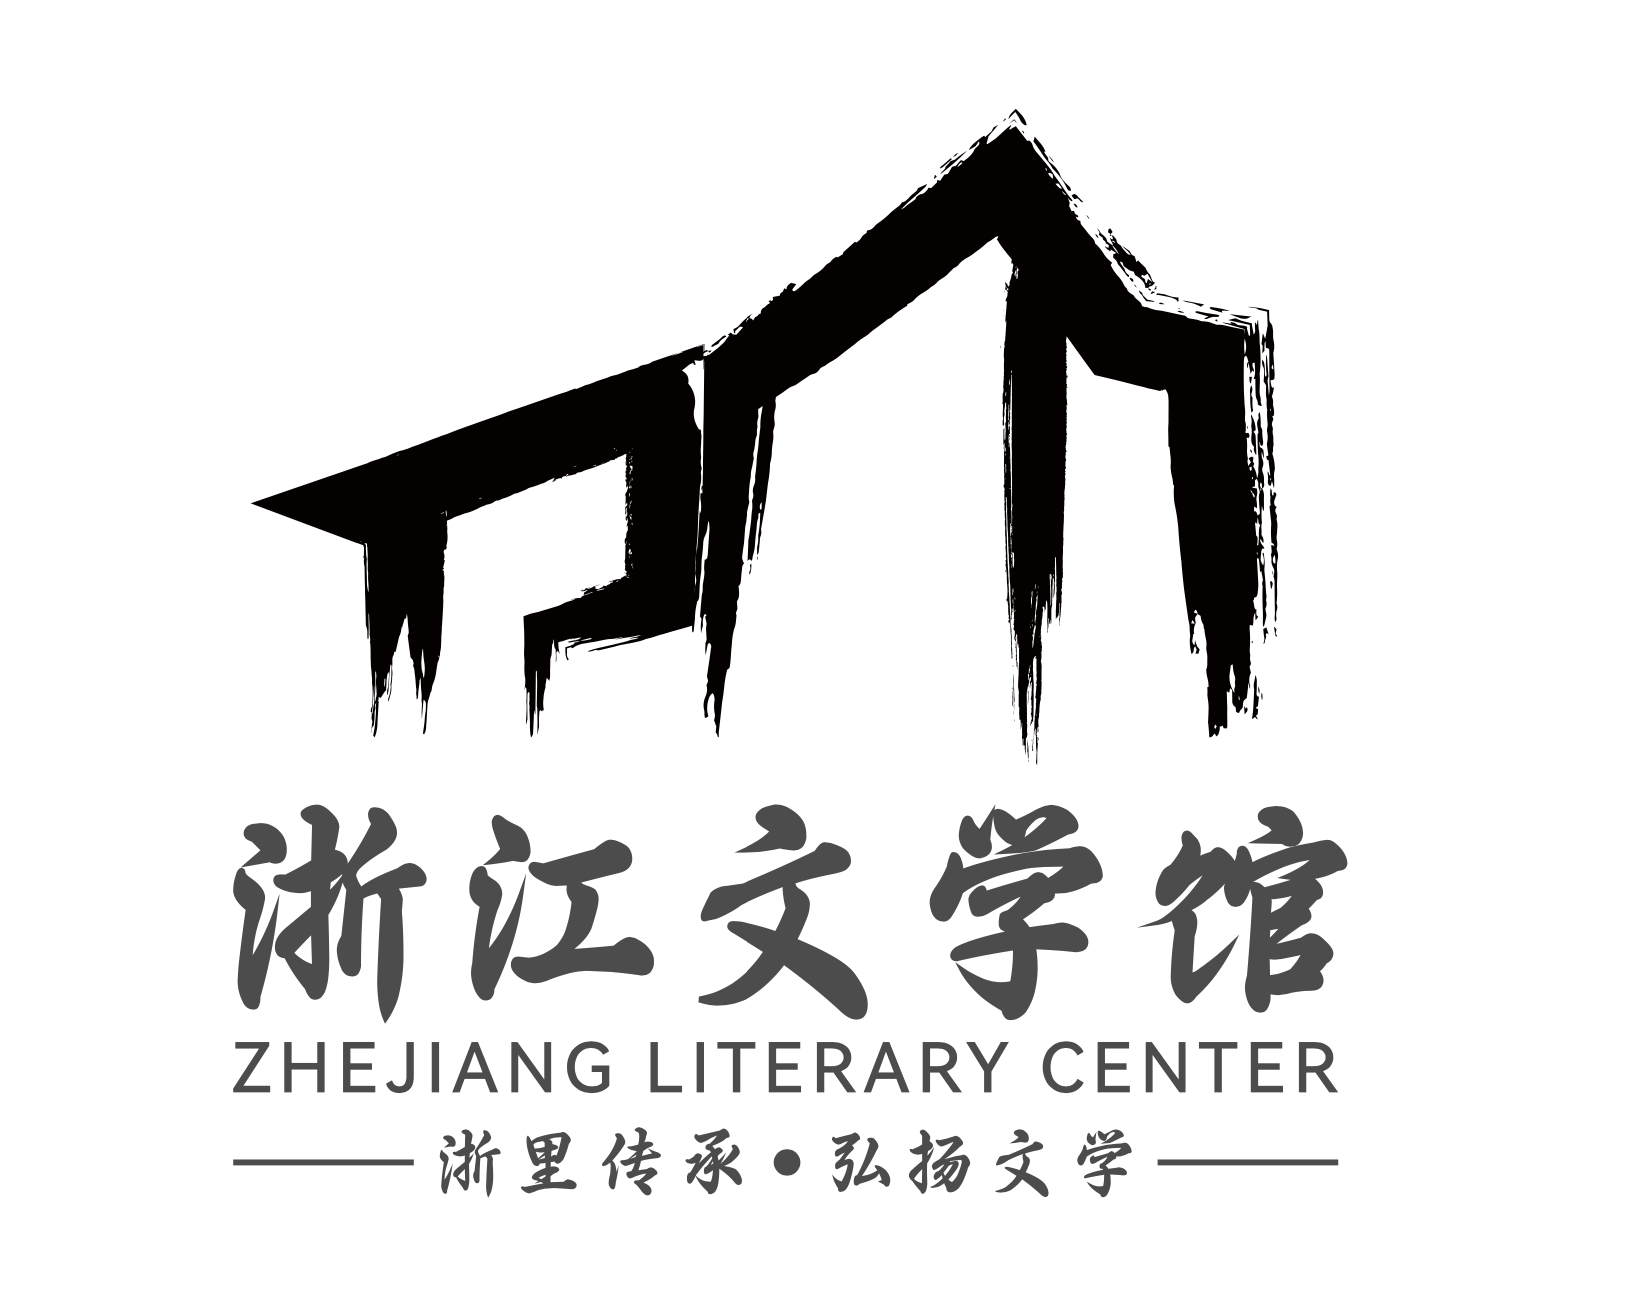 150件作品同网竞技,浙江文学馆logo征集进入评审阶段